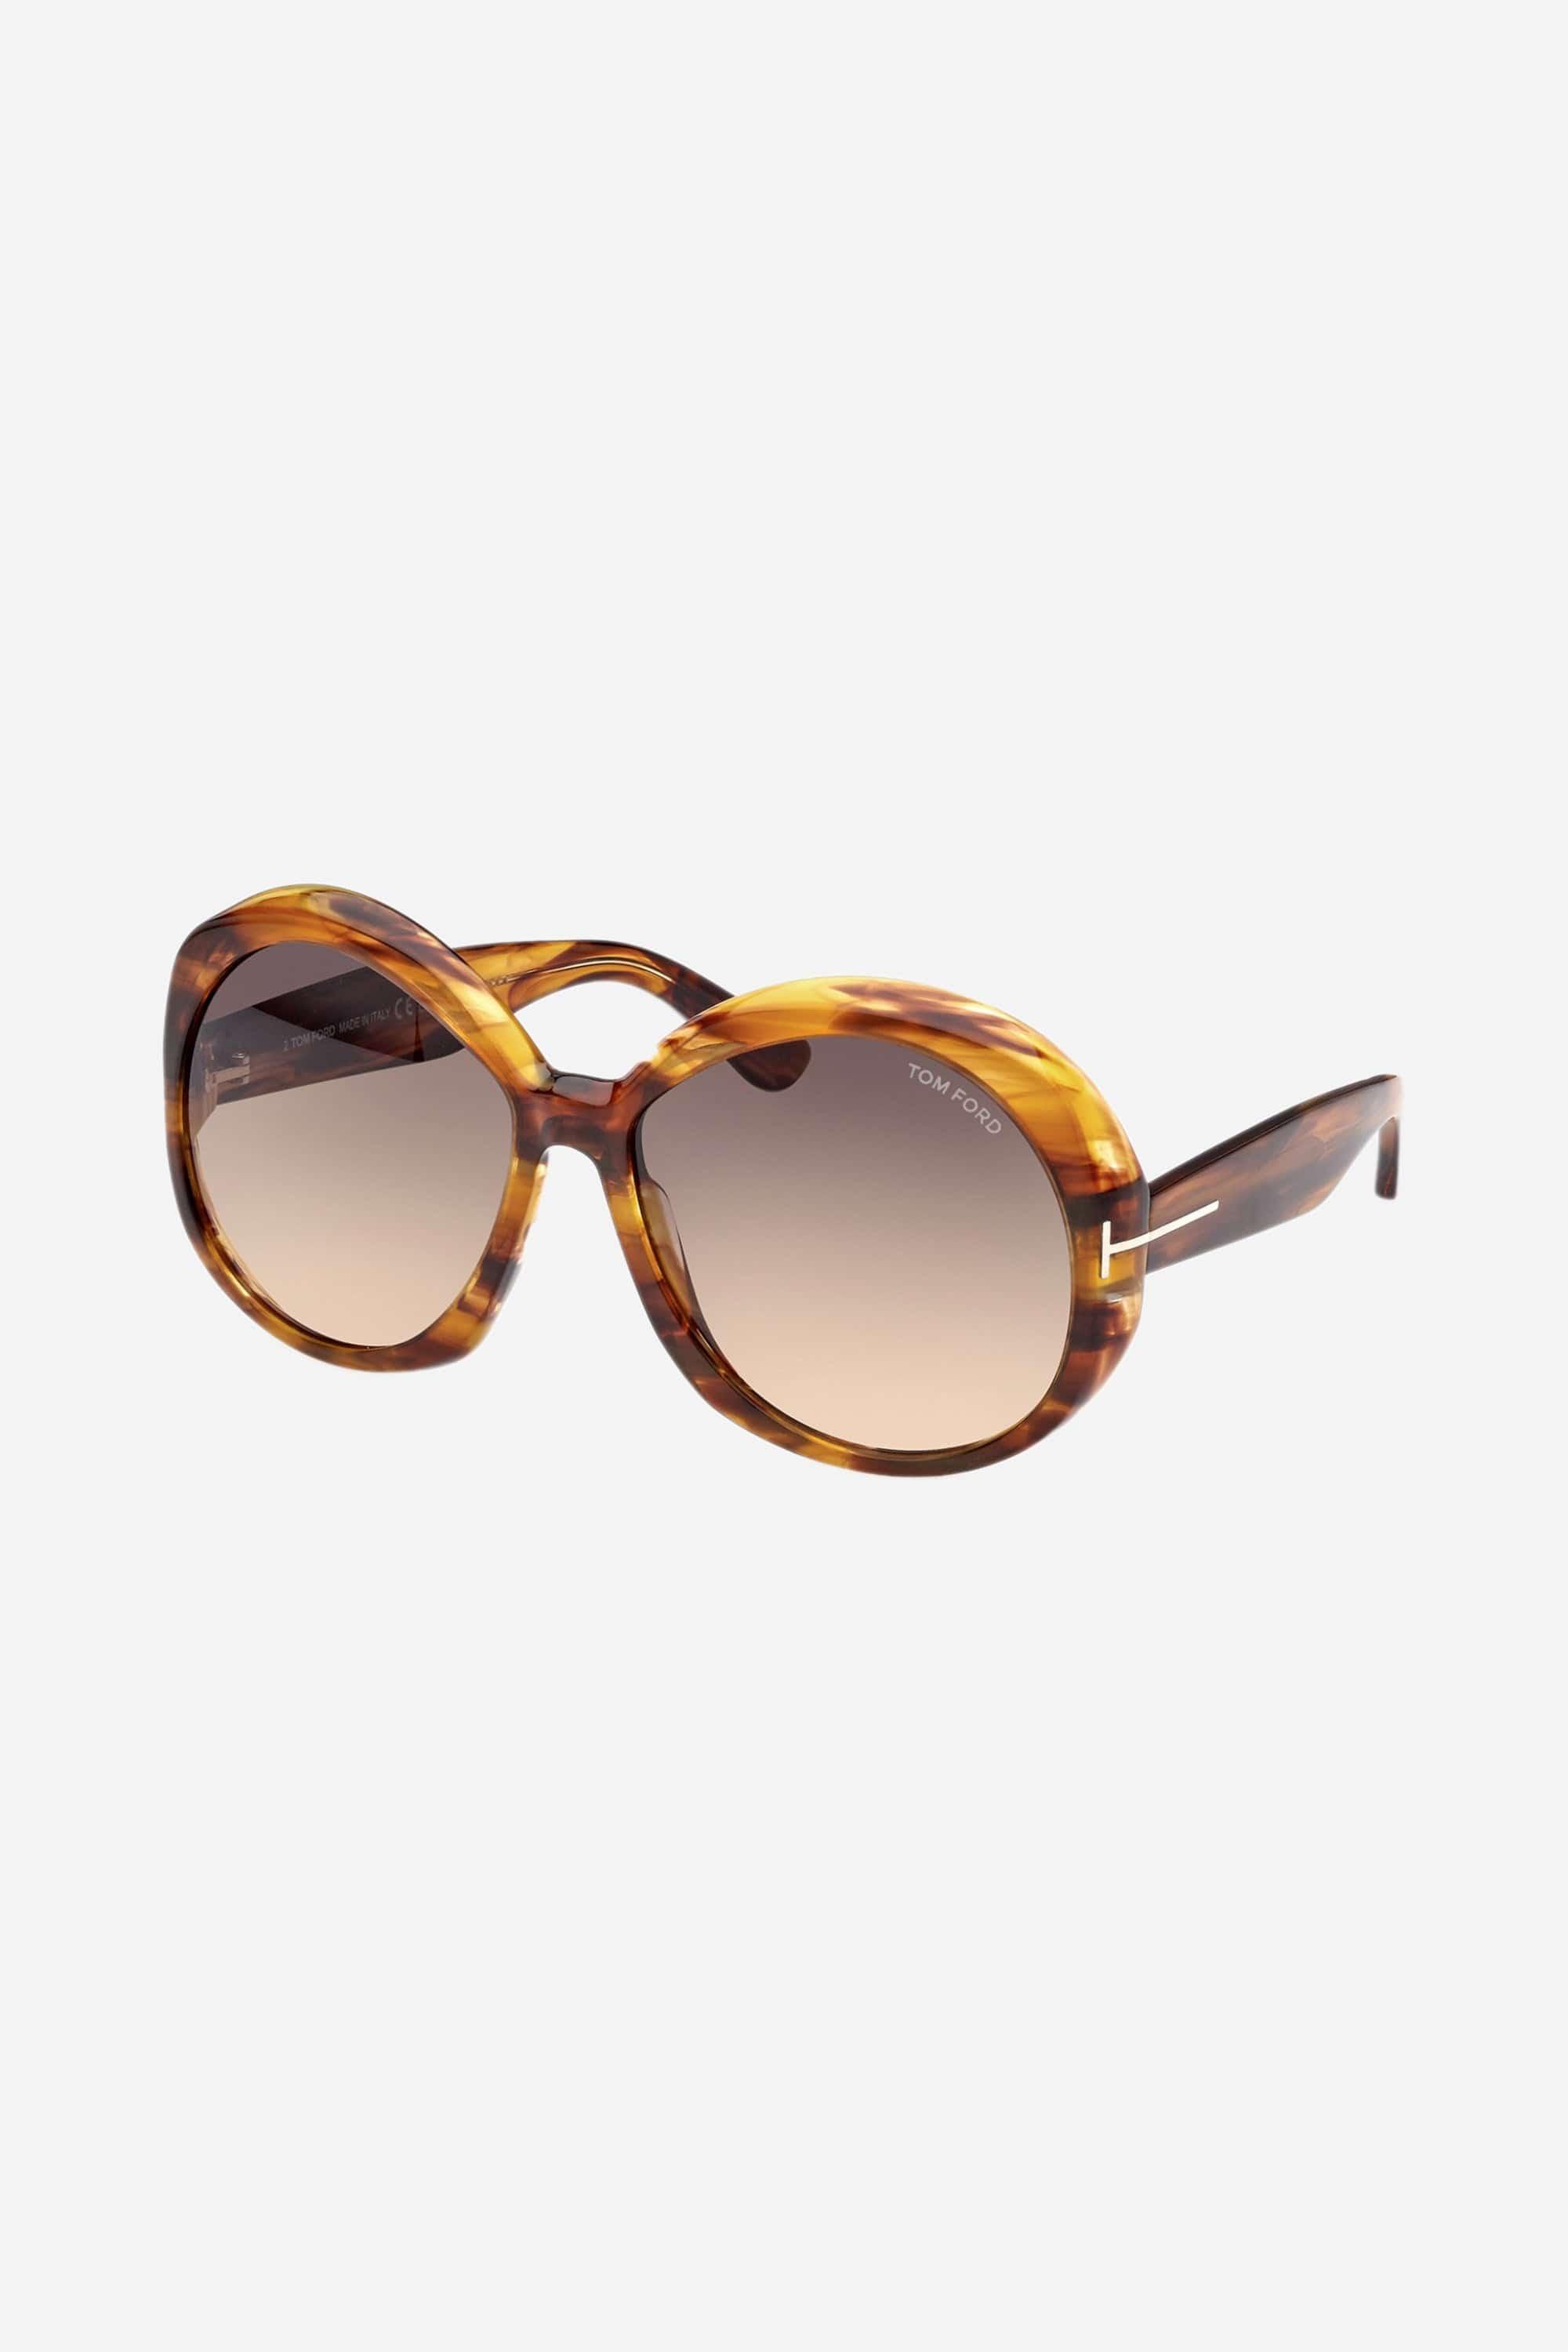 Tom Ford Roub Femenine Coloured Havana Sunglasses | Lyst